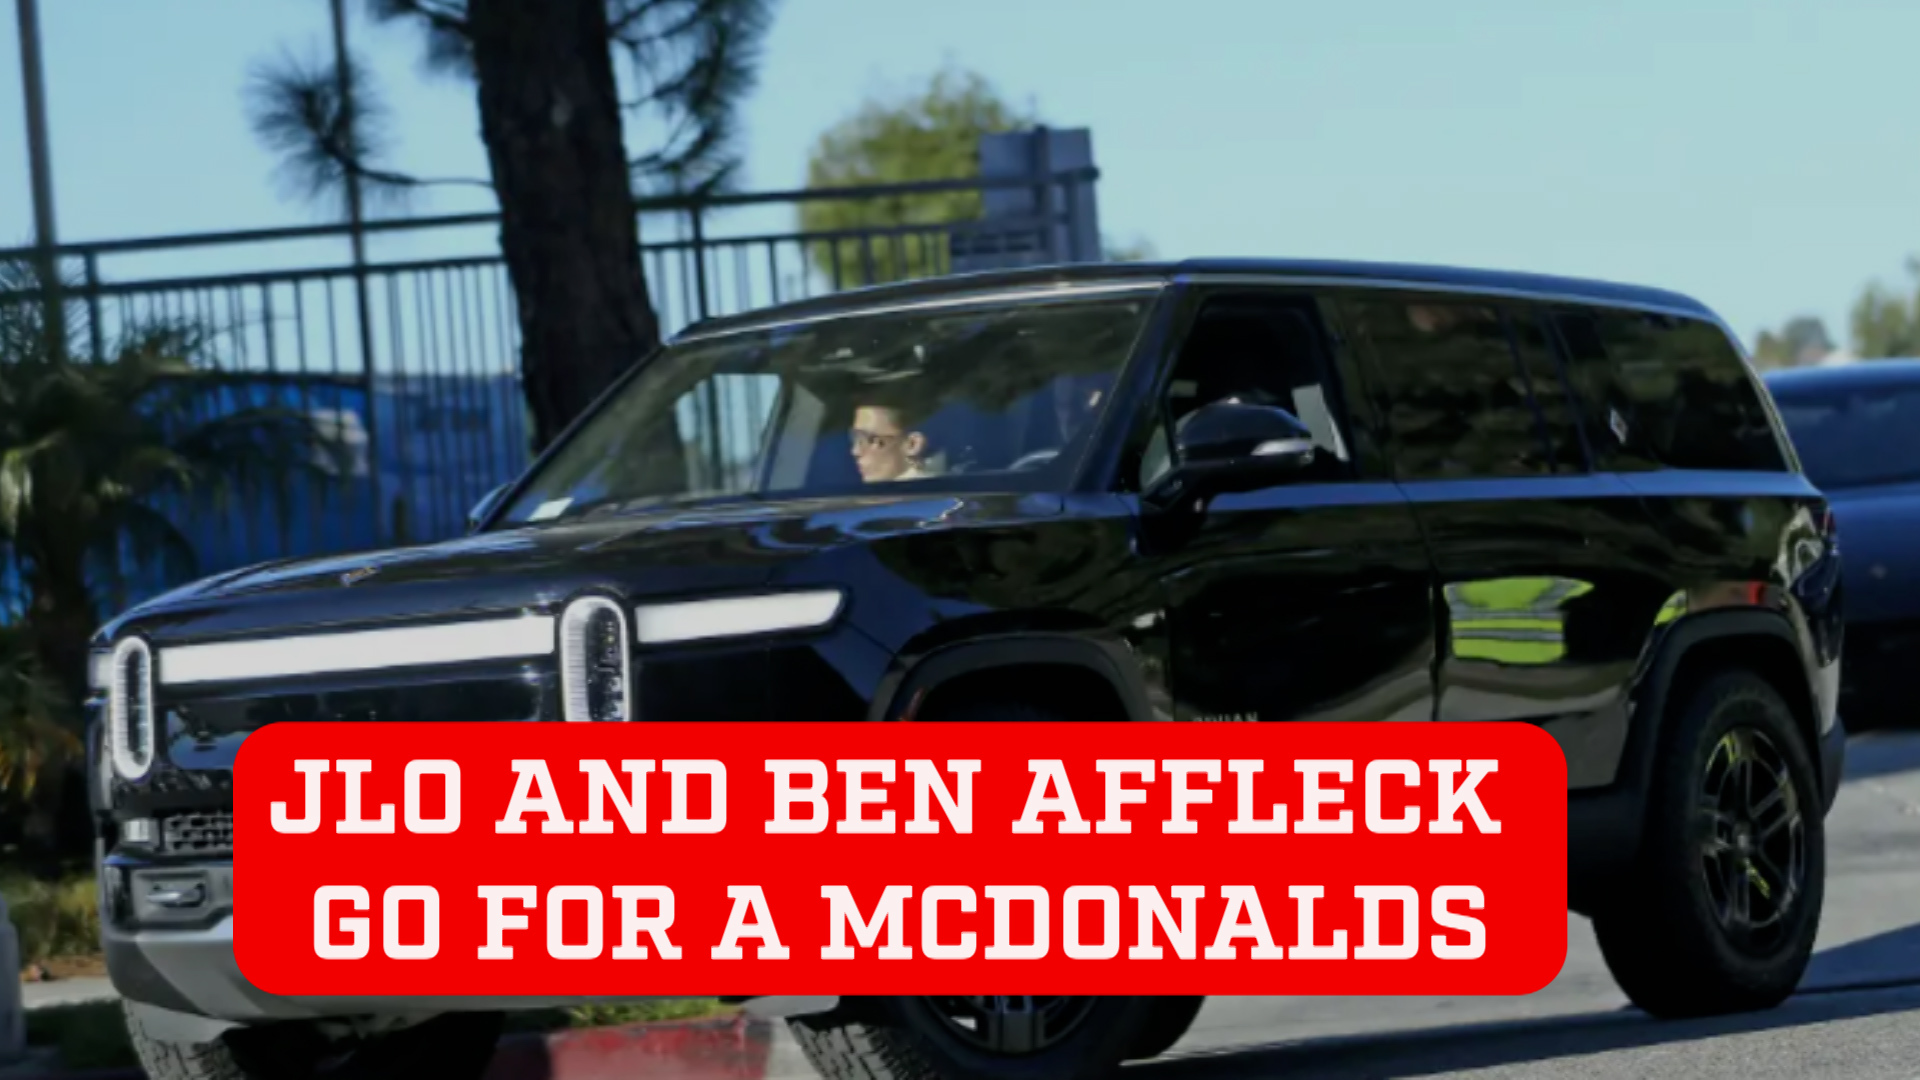 Jennifer Lopez and Ben Affleck reconcile over McDonalds drive-thru meal after huge argument